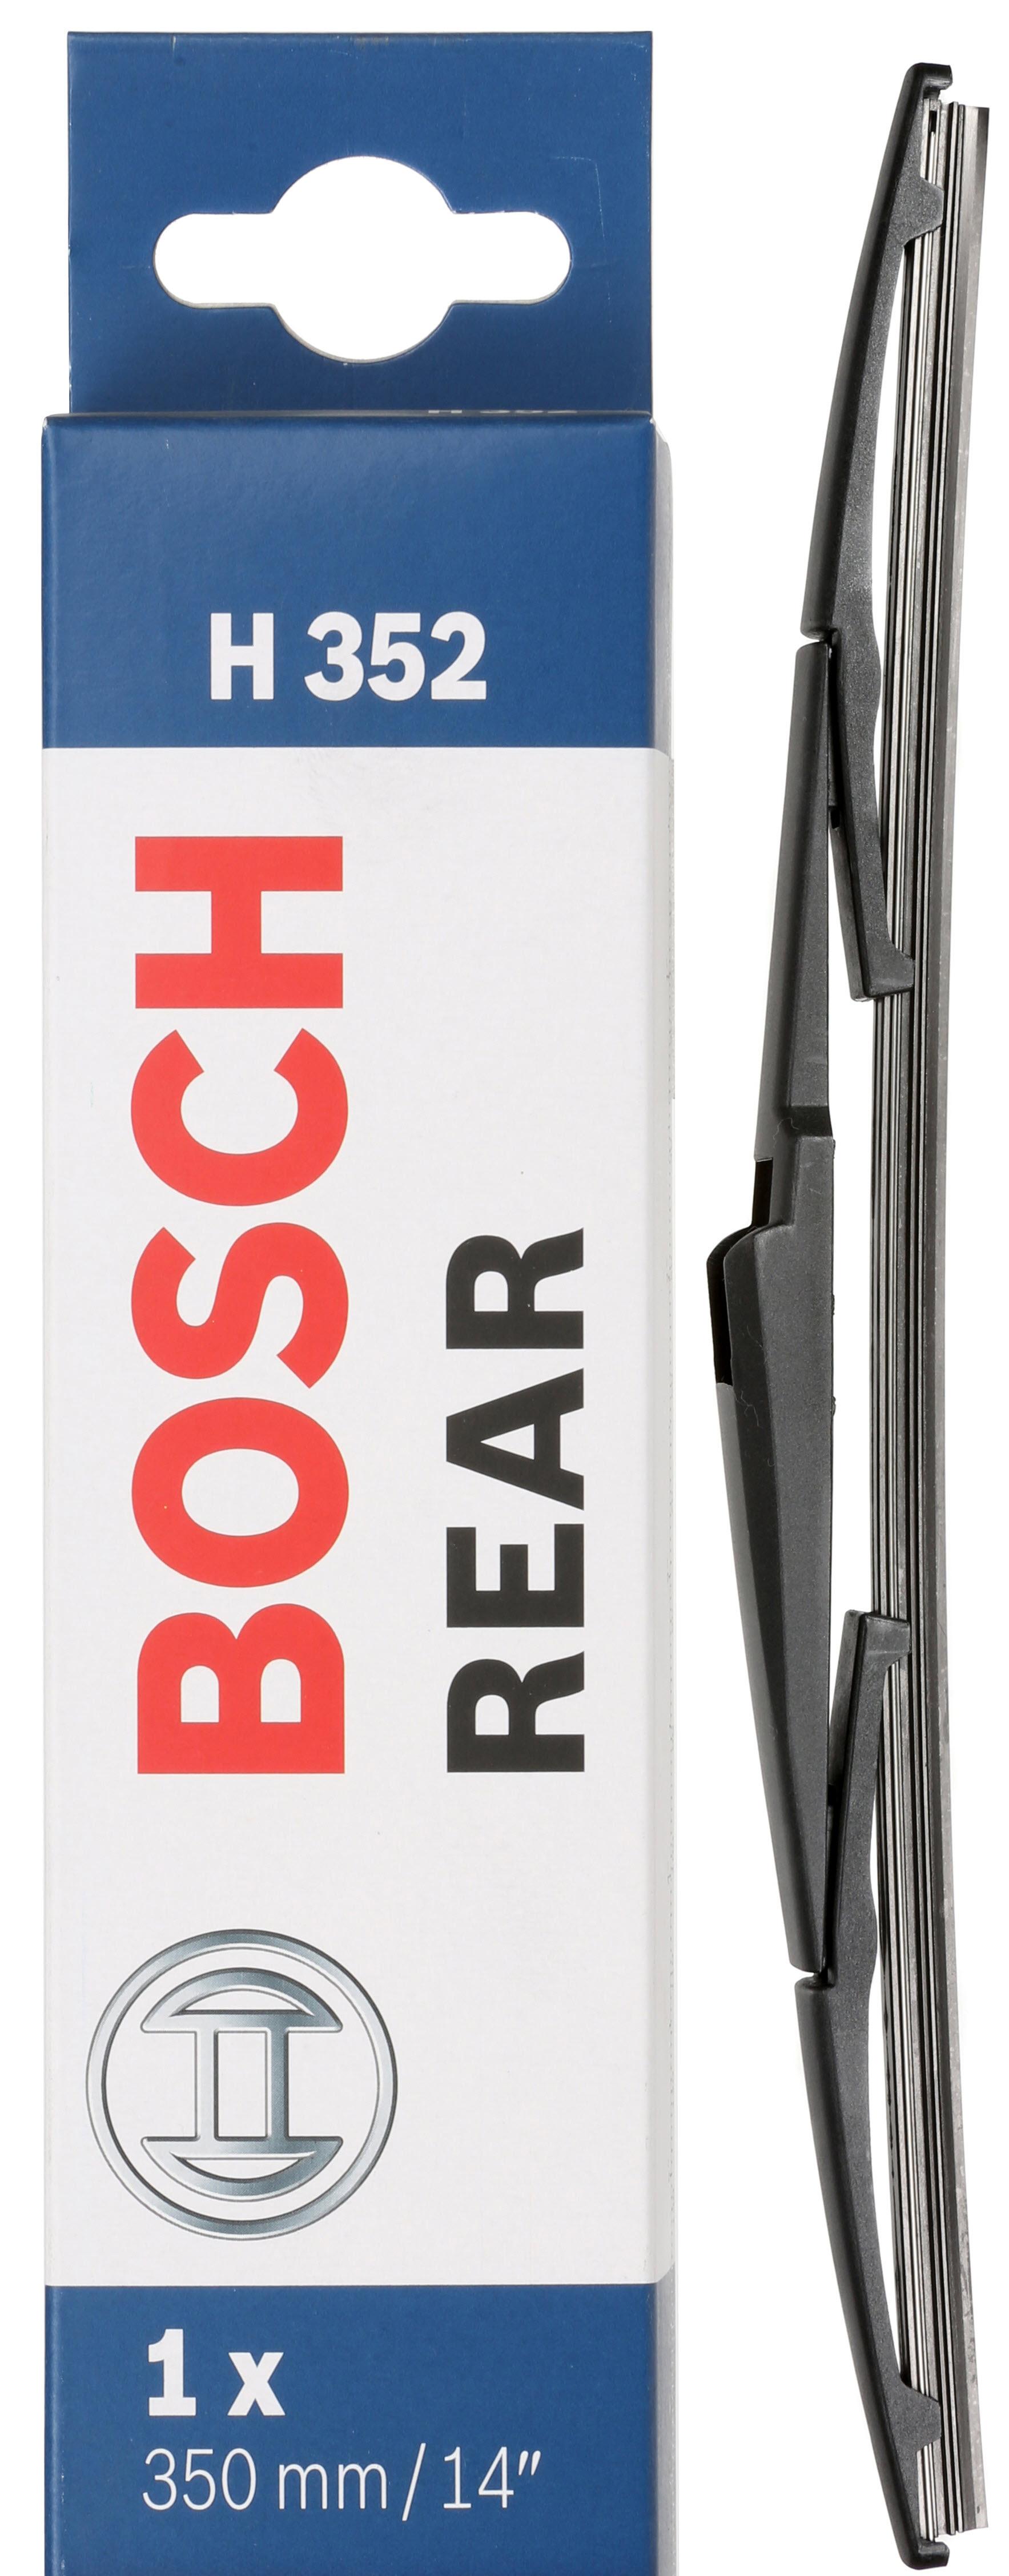 Bosch Rear Wiper H352